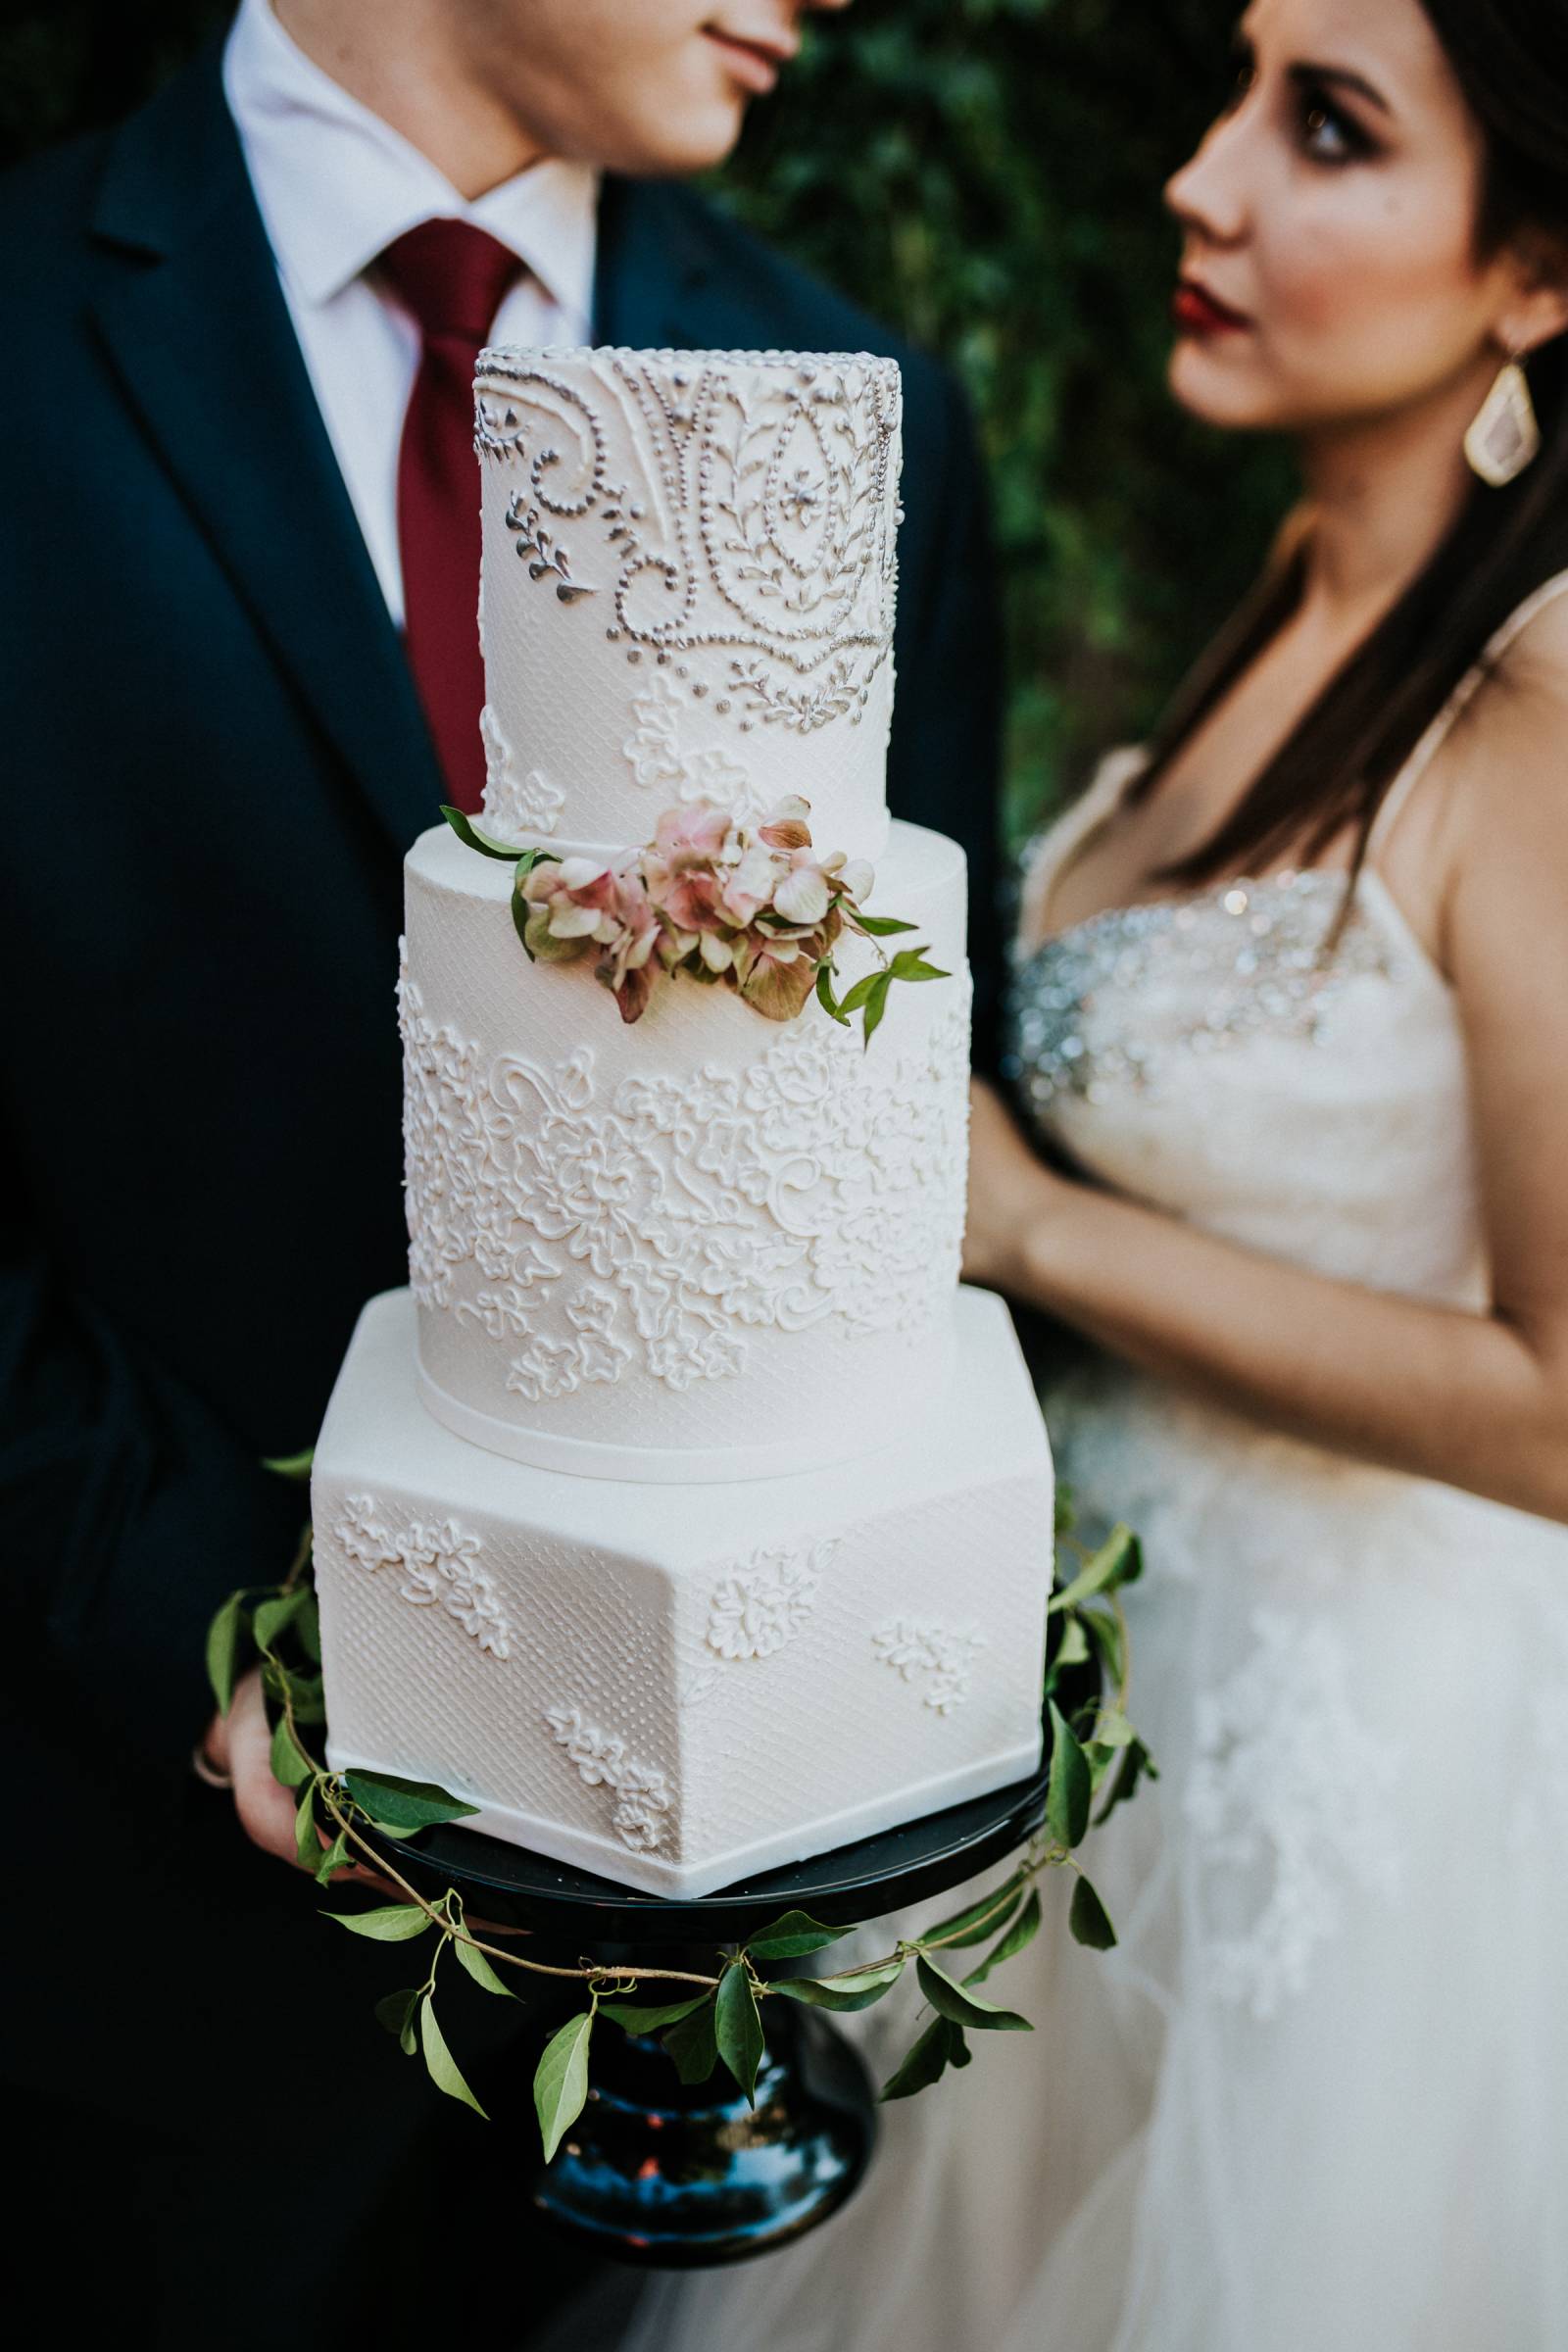 Mixed shape wedding cake